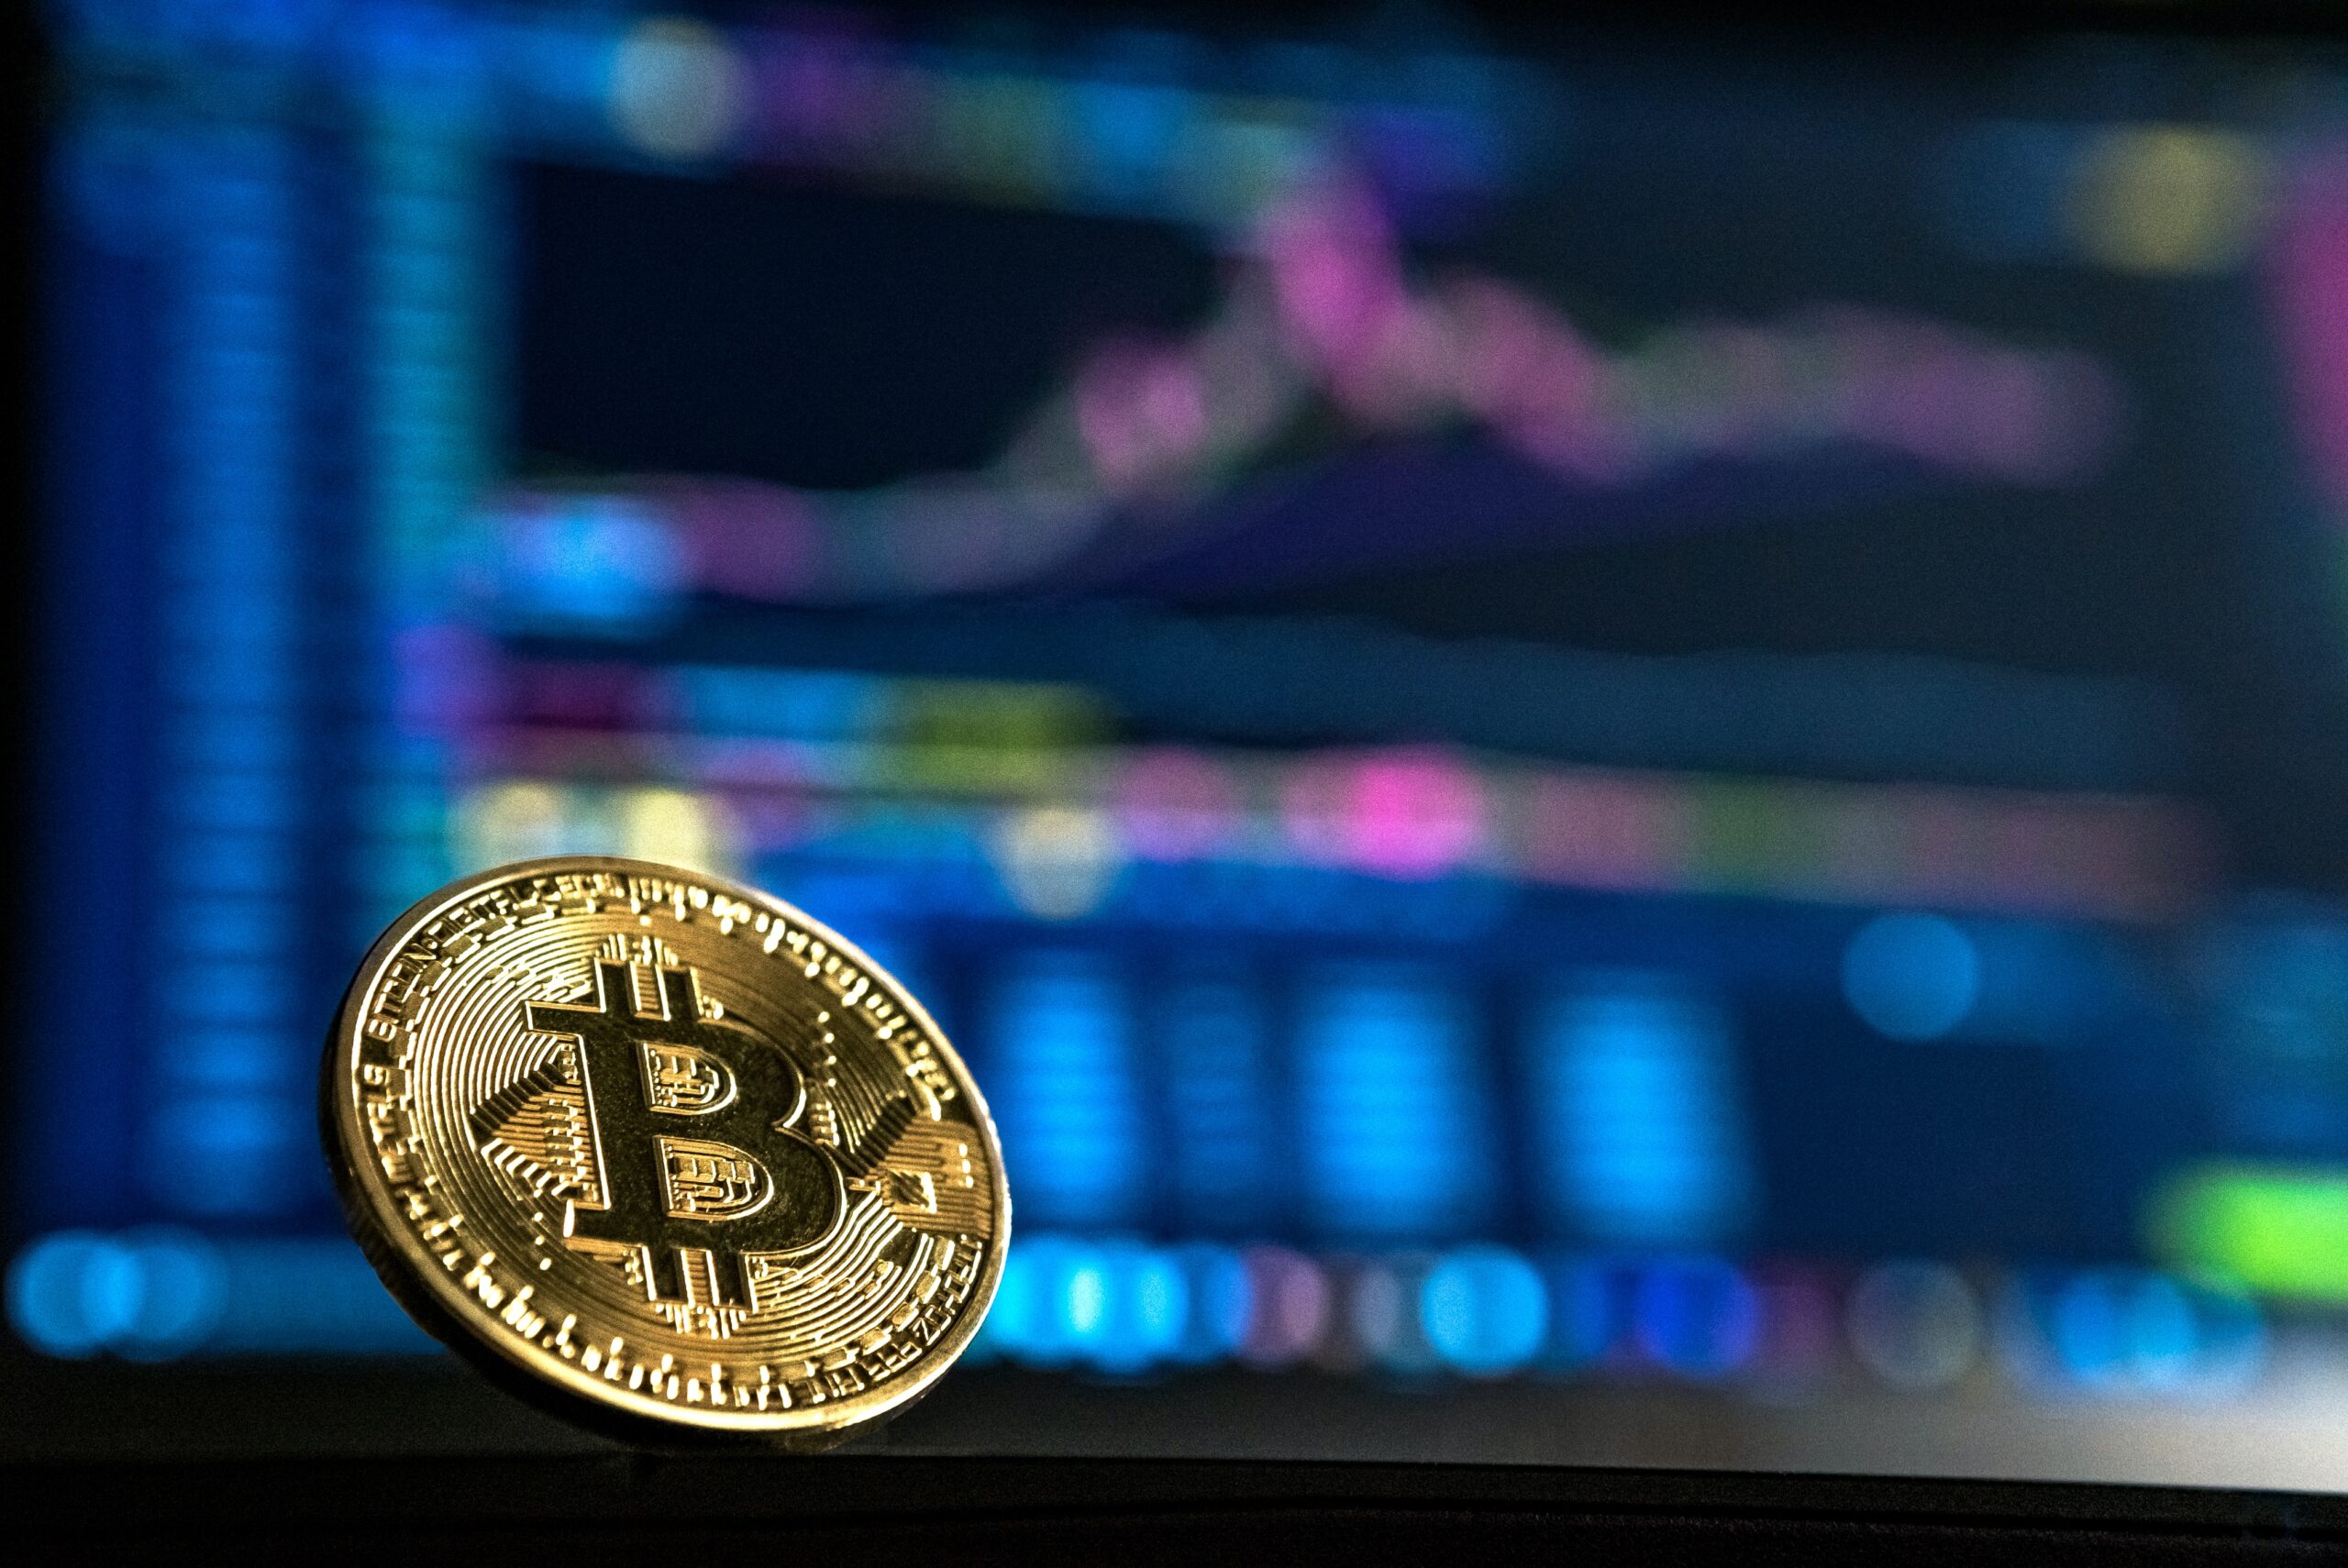 Il prezzo del Bitcoin potrebbe raggiungere i 2.3 milioni di dollari se il 19.4% degli asset globali venisse allocato su di esso: Ark Invest - Unchained